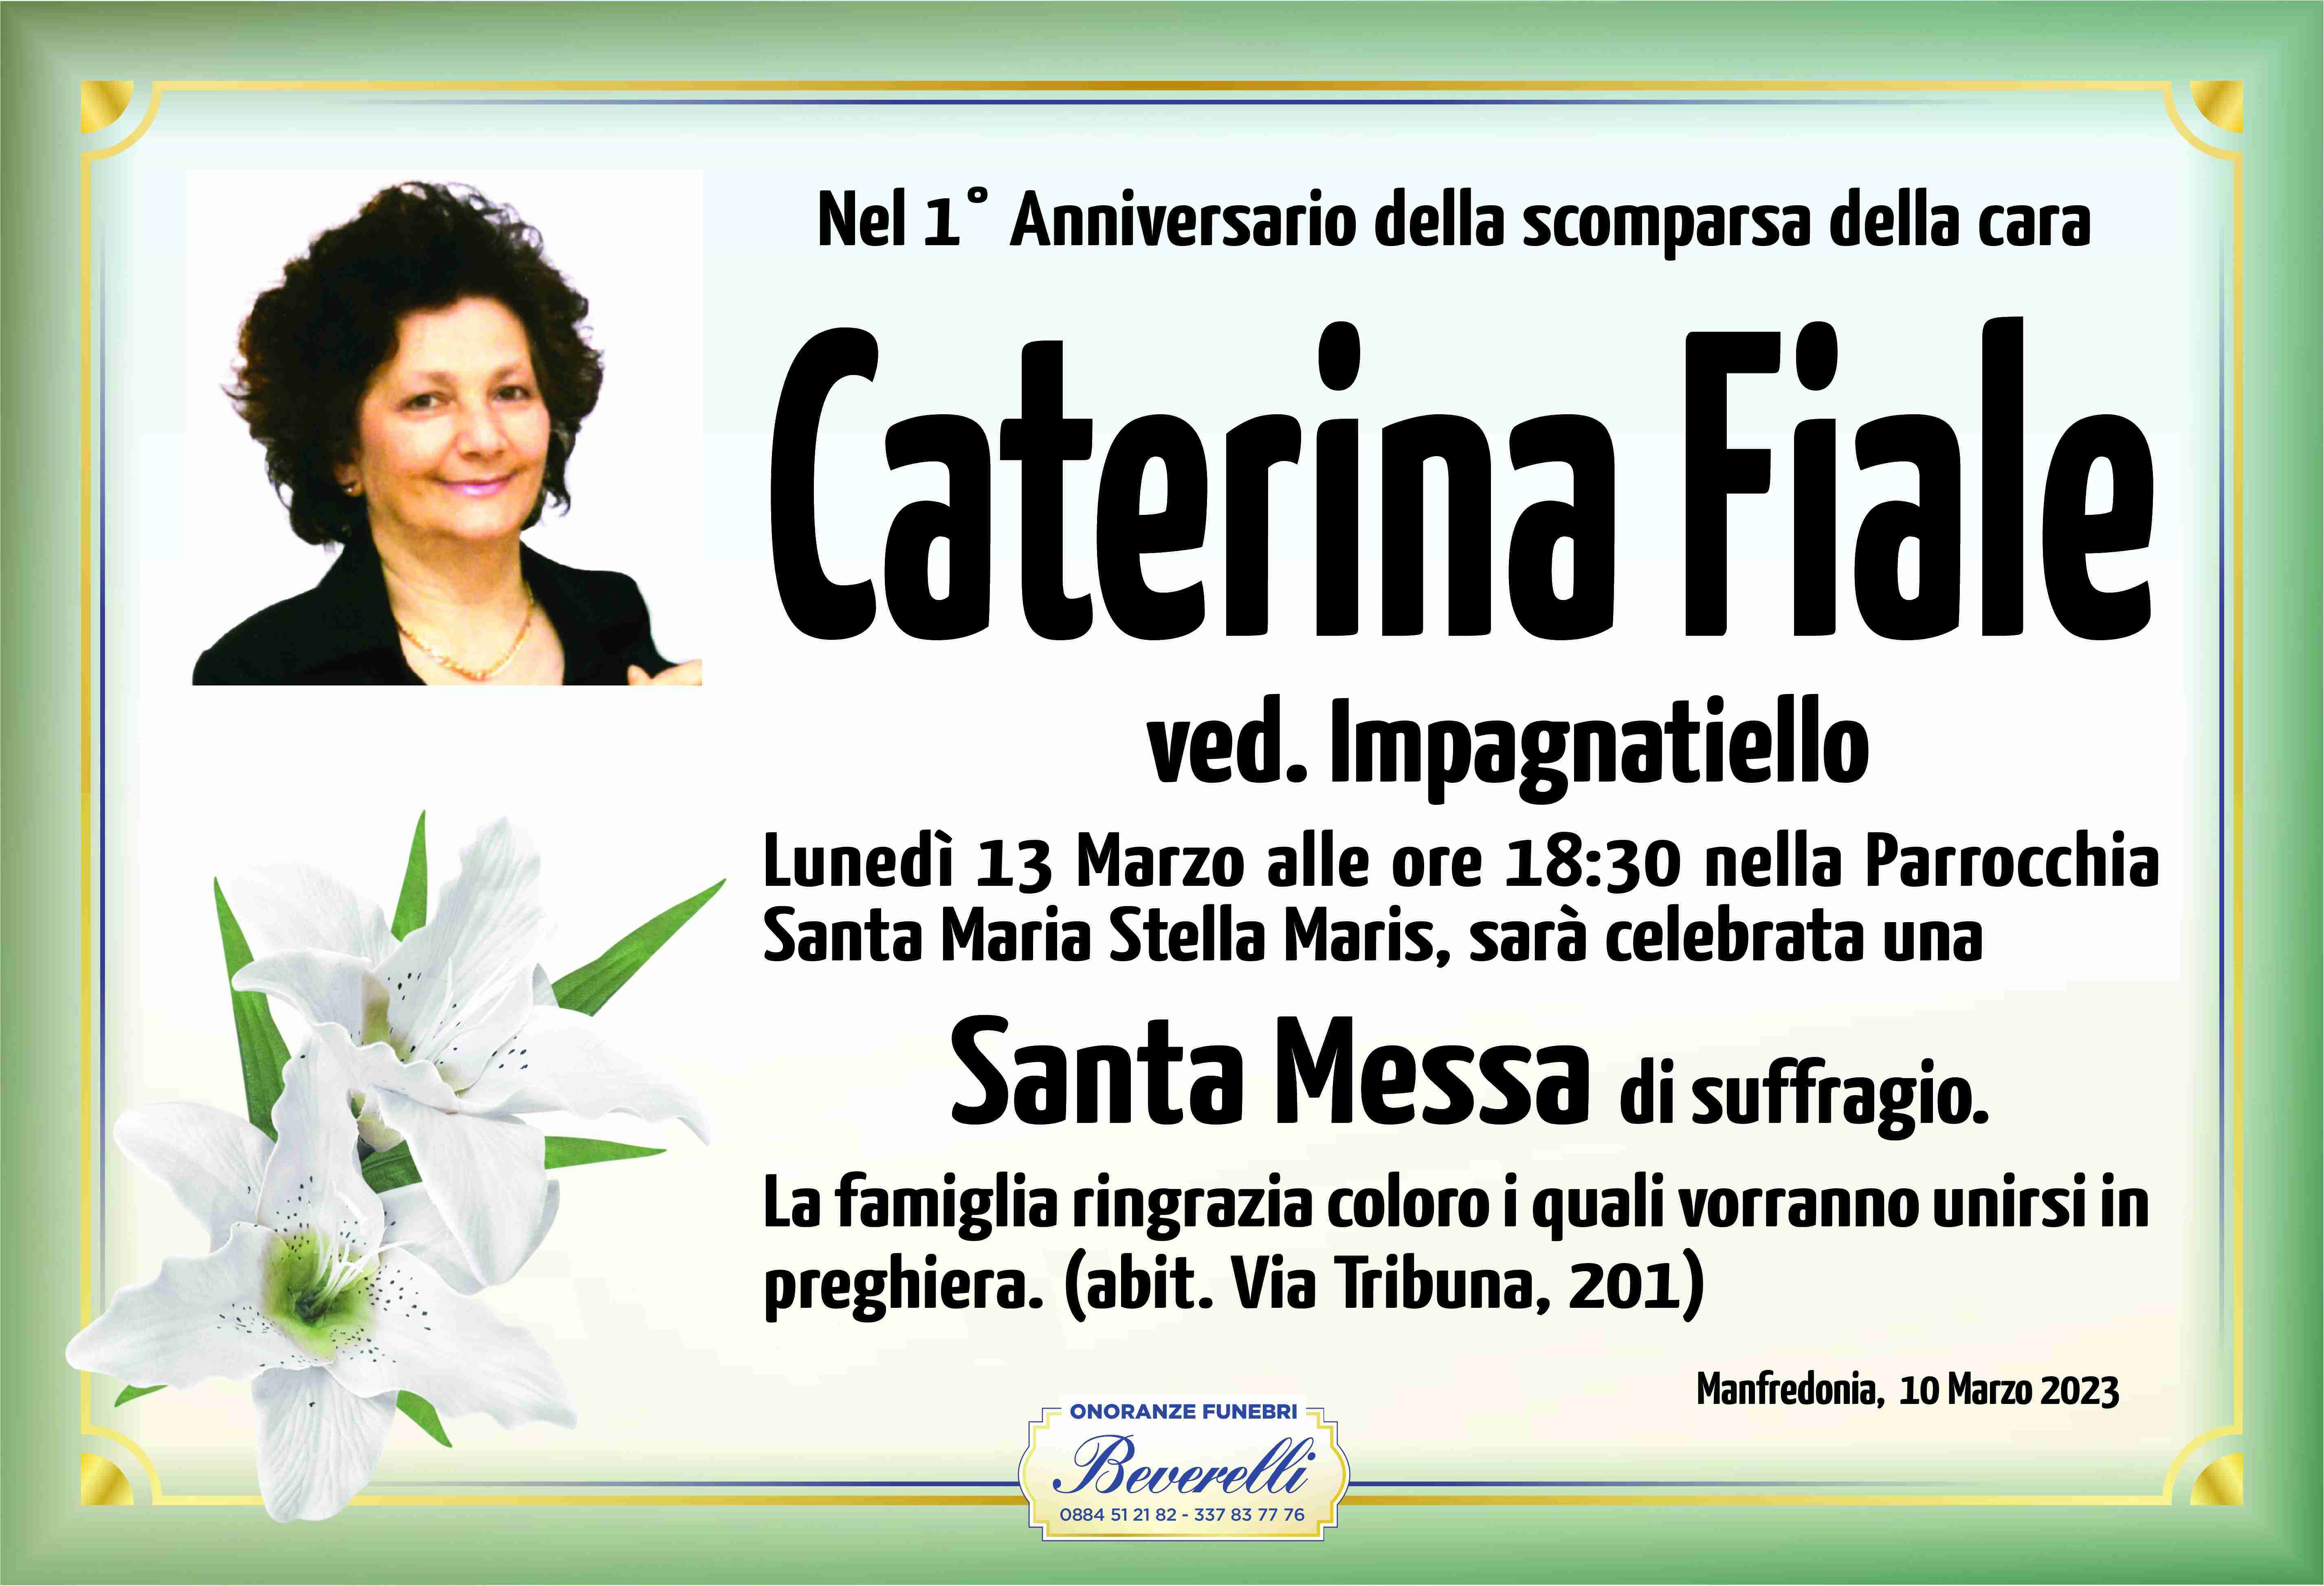 Caterina Fiale